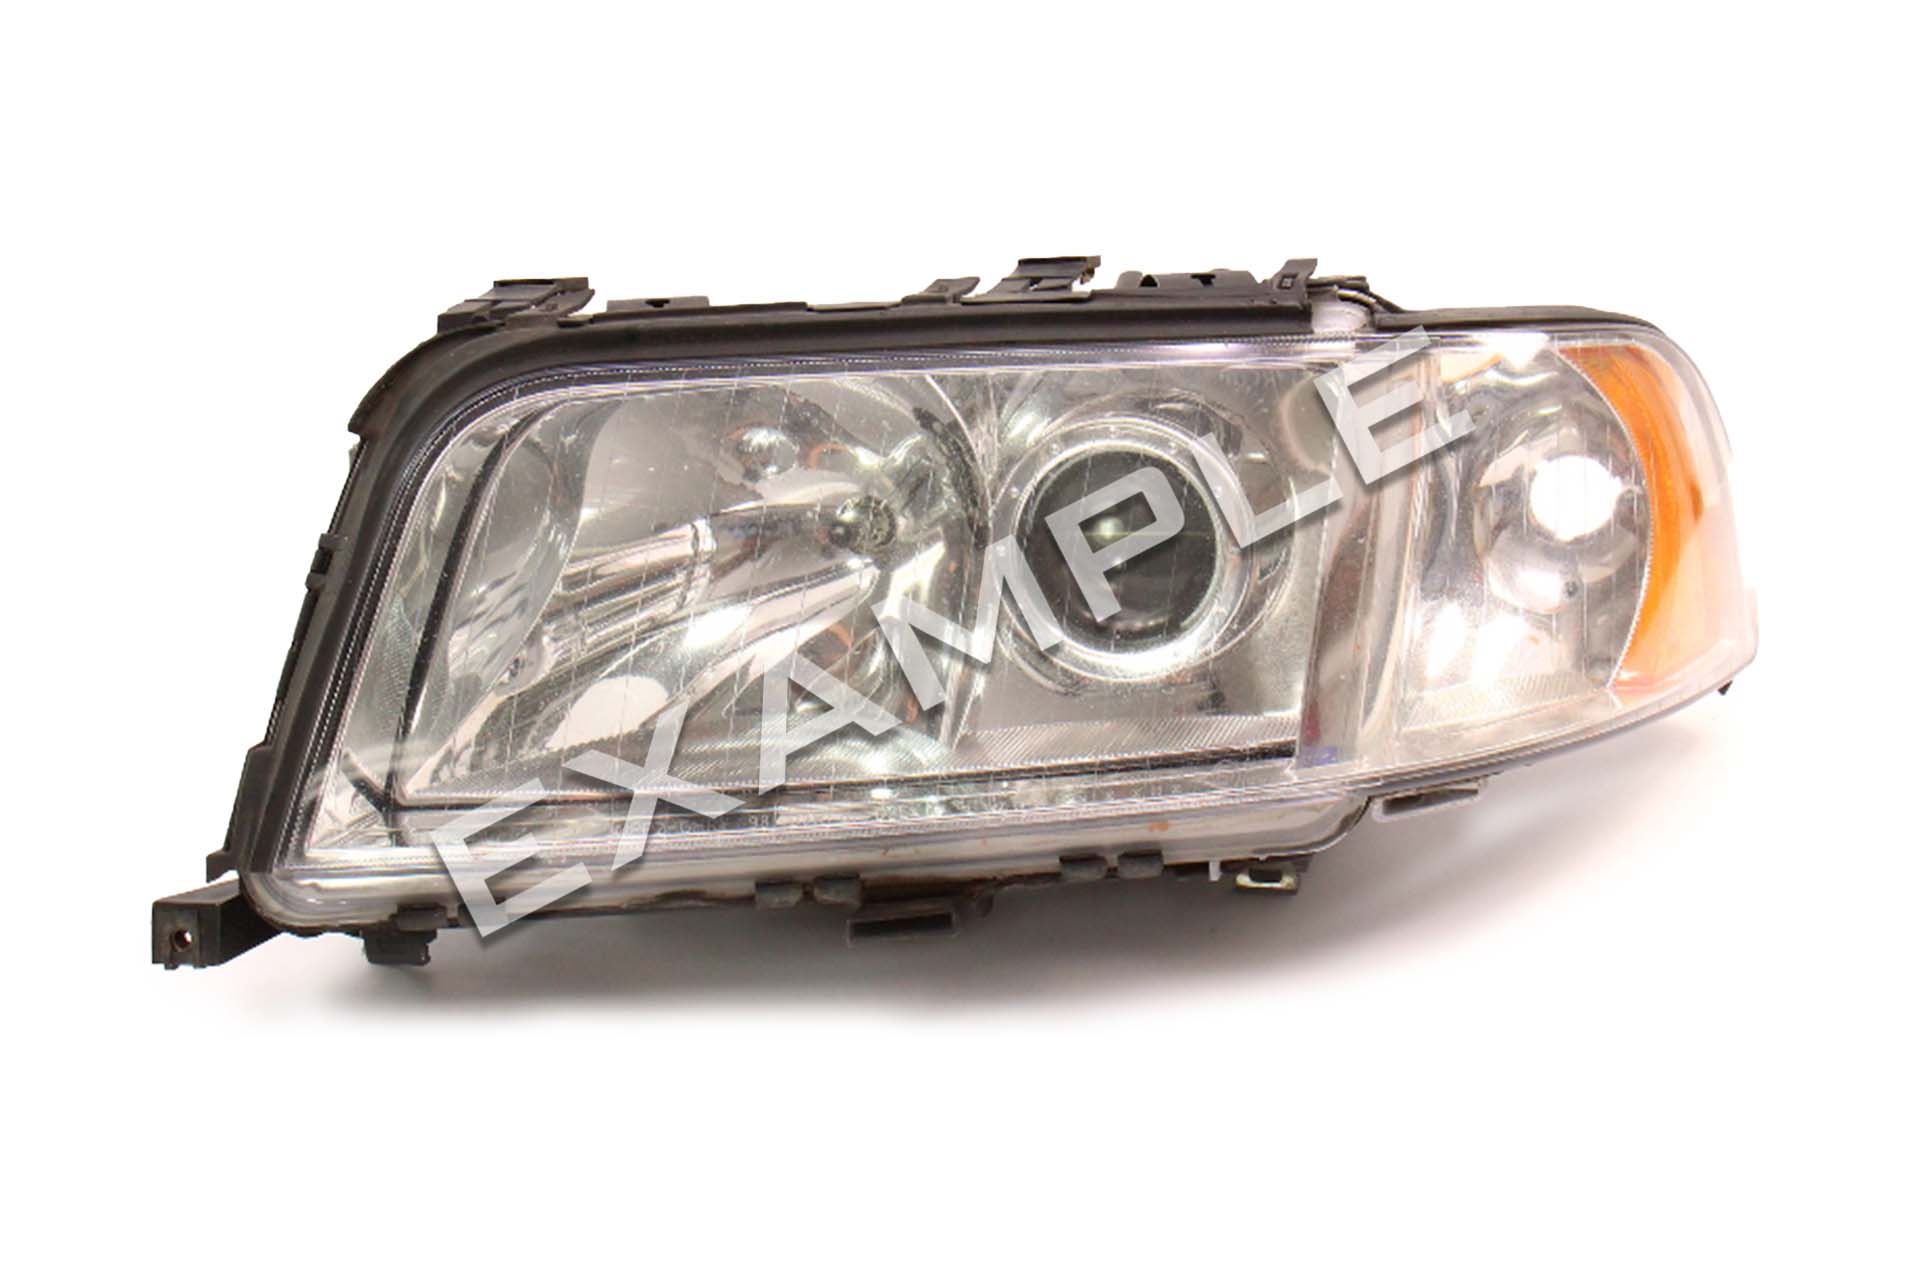 Kit de réparation et de mise à niveau des phares bi-xénon Audi A8 D2 99-02 pour phares xénon 